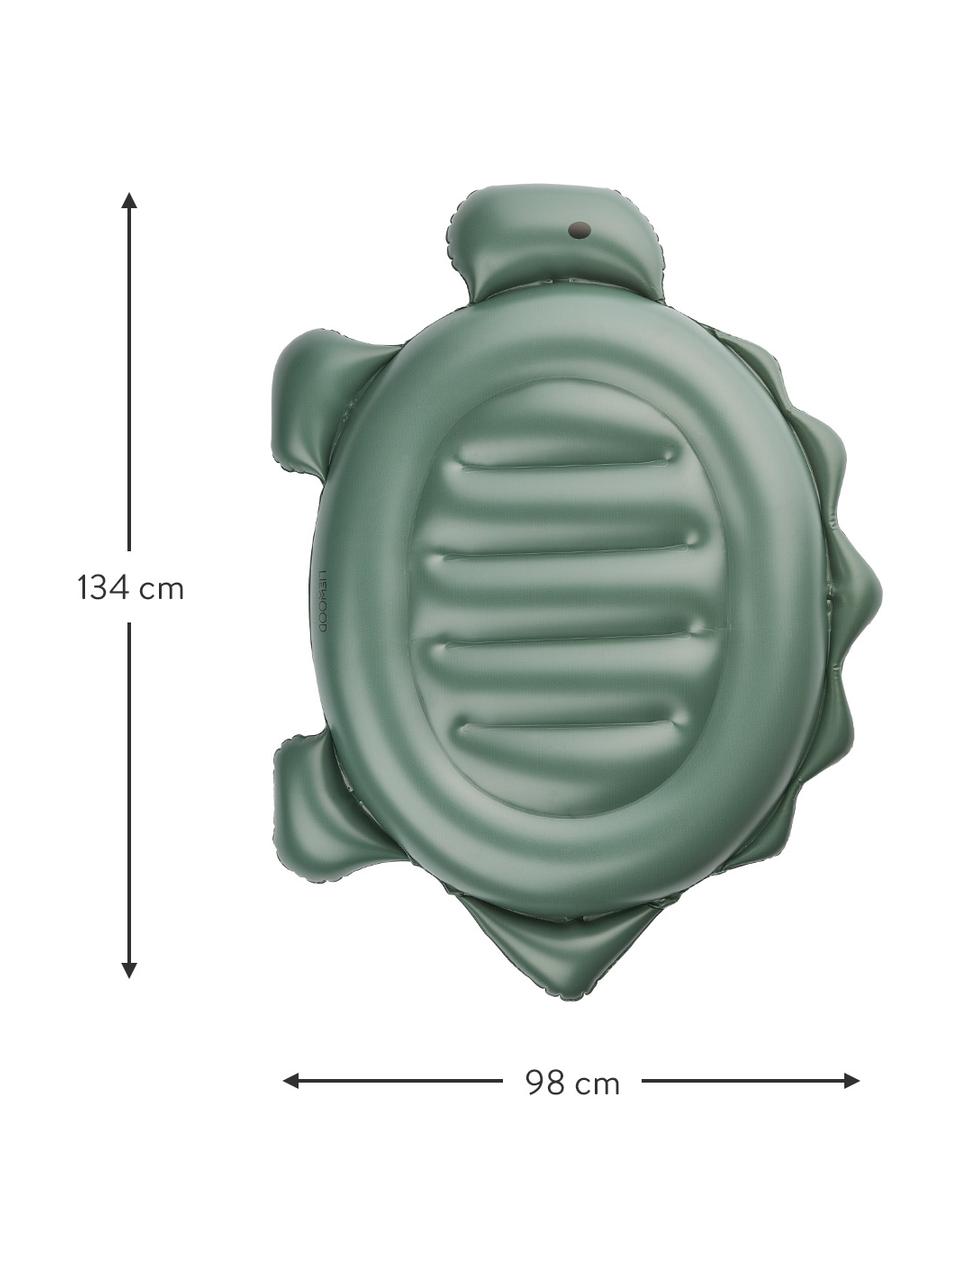 Zabawka pływająca Cody, 100% tworzywo sztuczne (PVC), Zielony, S 98 x D 134 cm